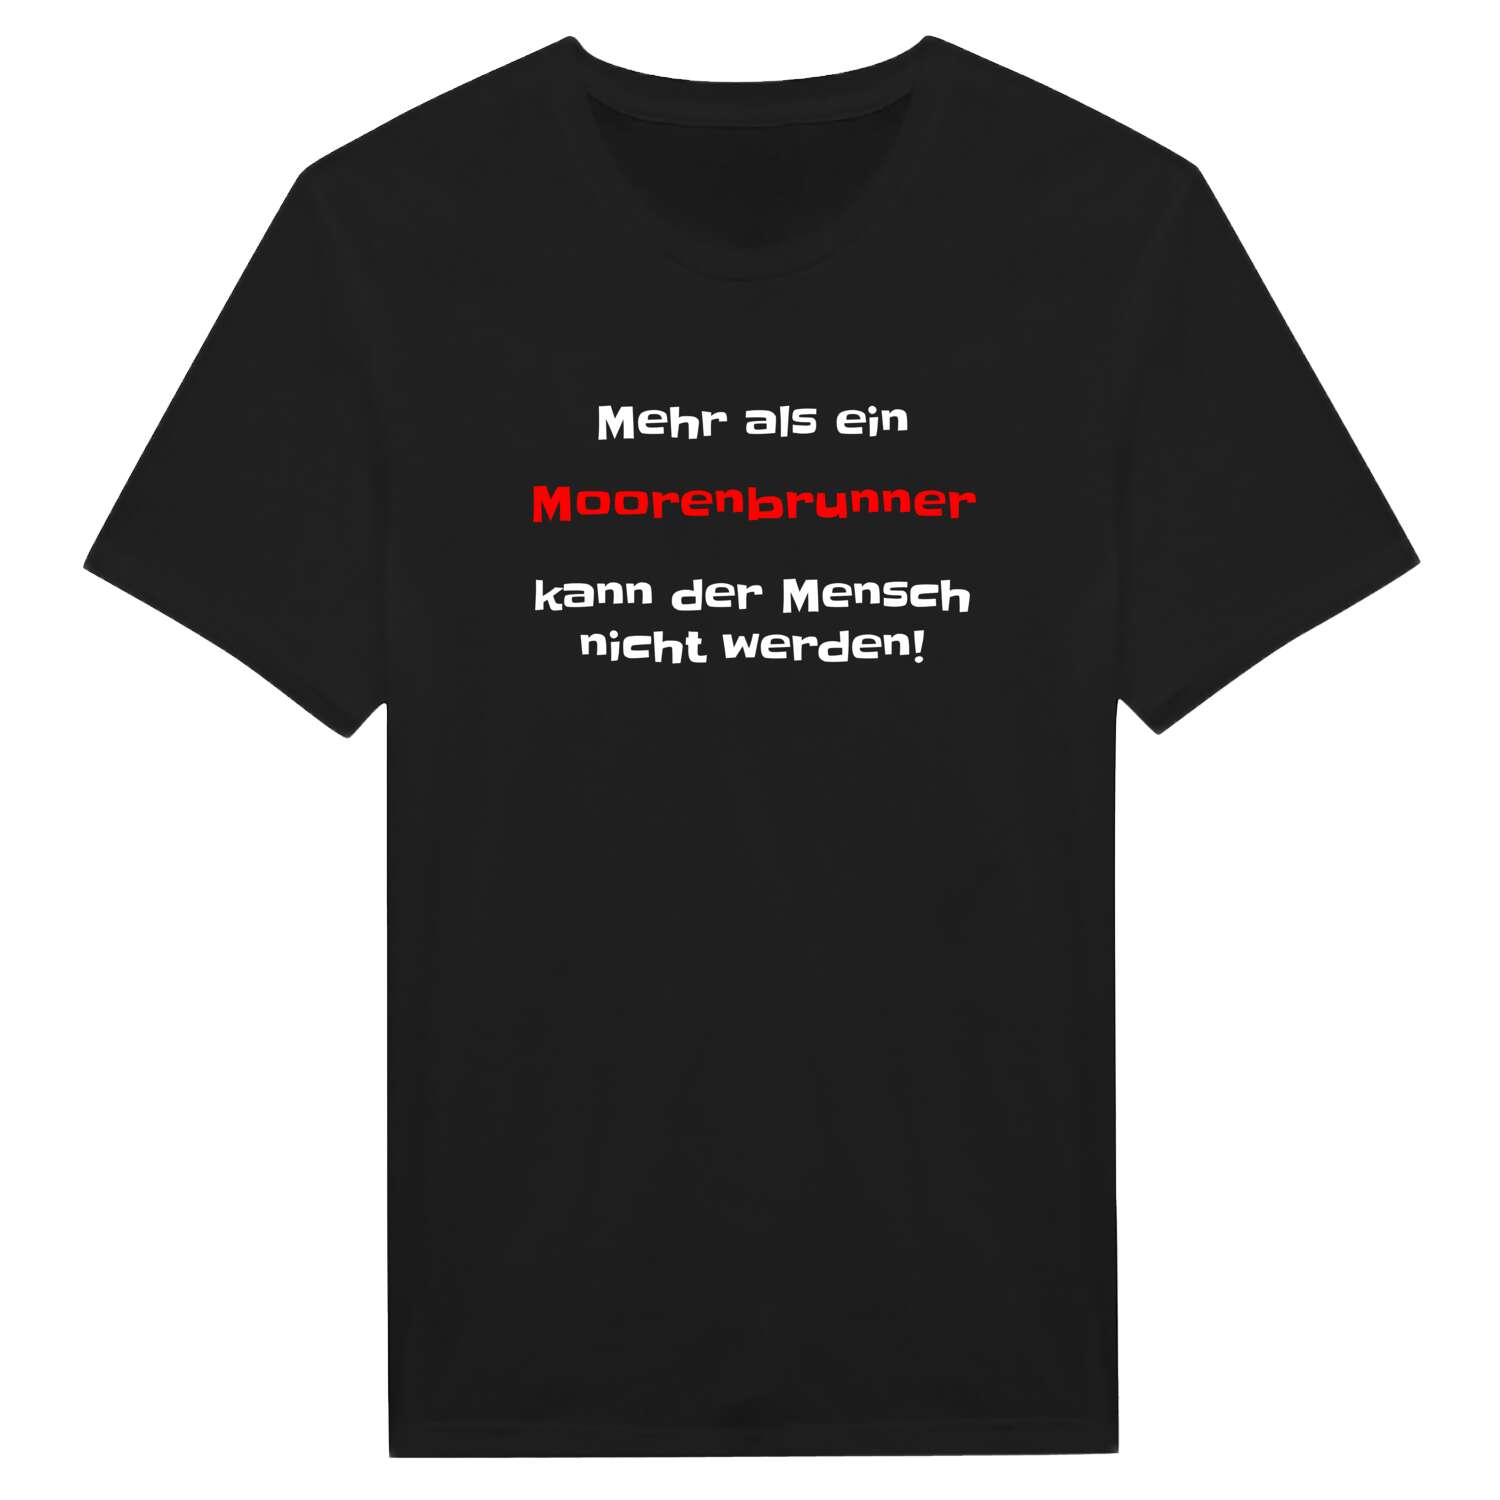 Moorenbrunn T-Shirt »Mehr als ein«